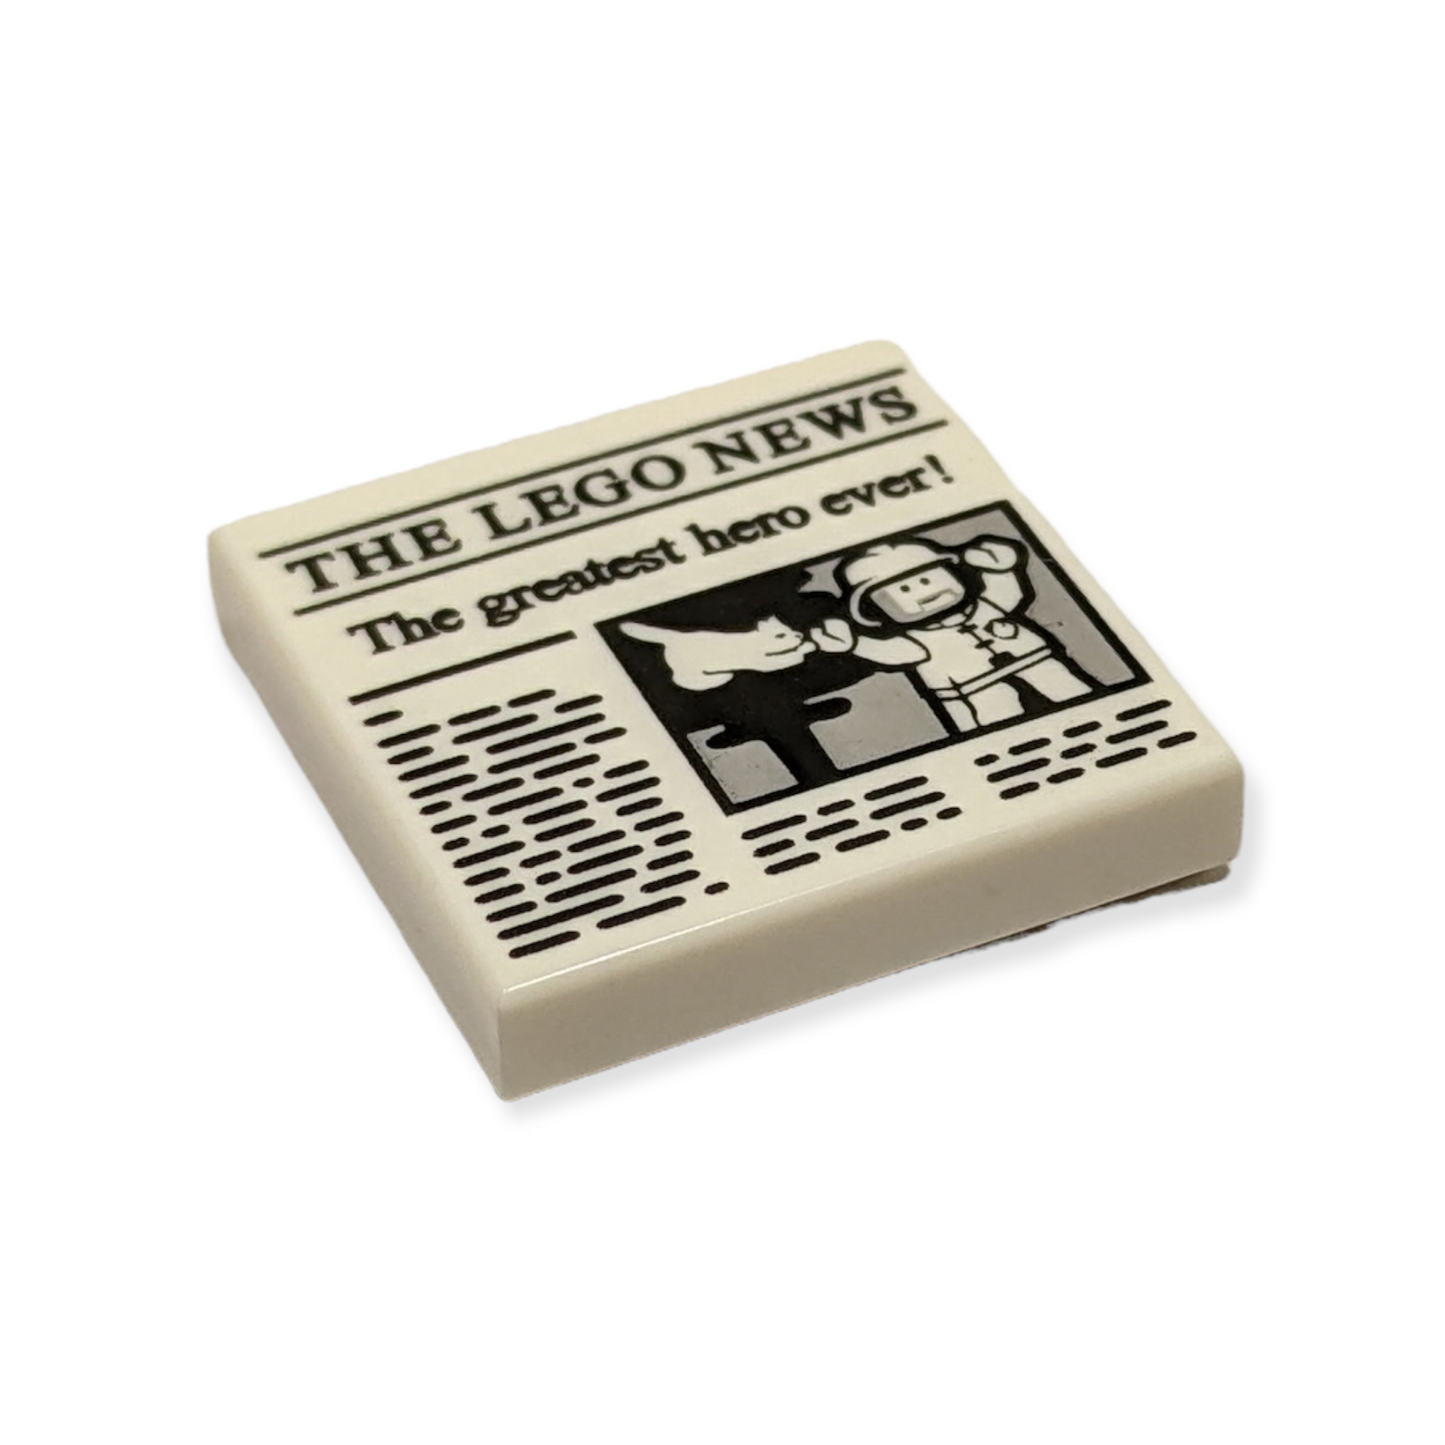 LEGO Tile 2x2 - The LEGO News